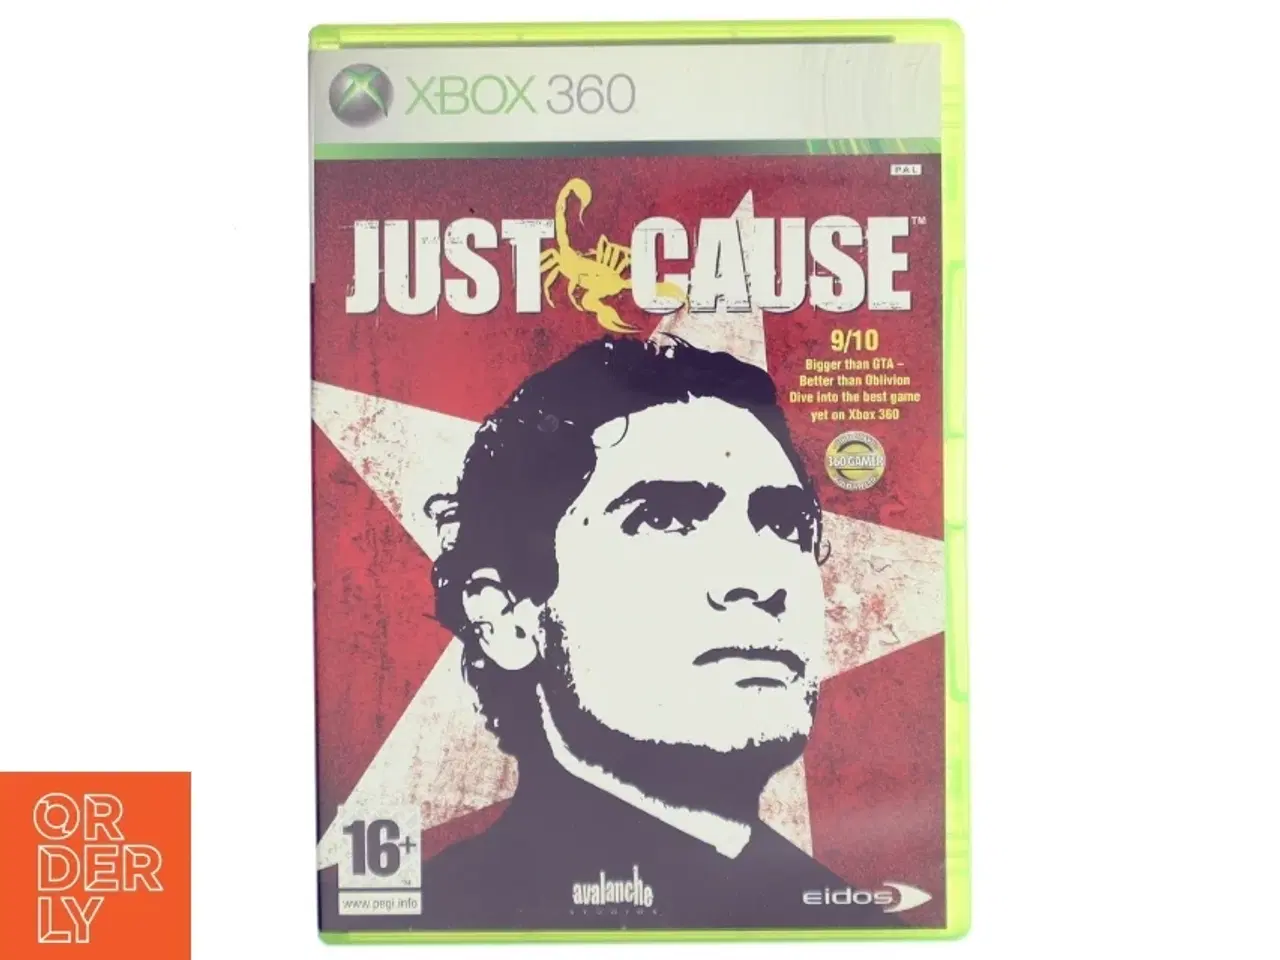 Billede 1 - Just Cause Xbox 360 Spil fra Eidos